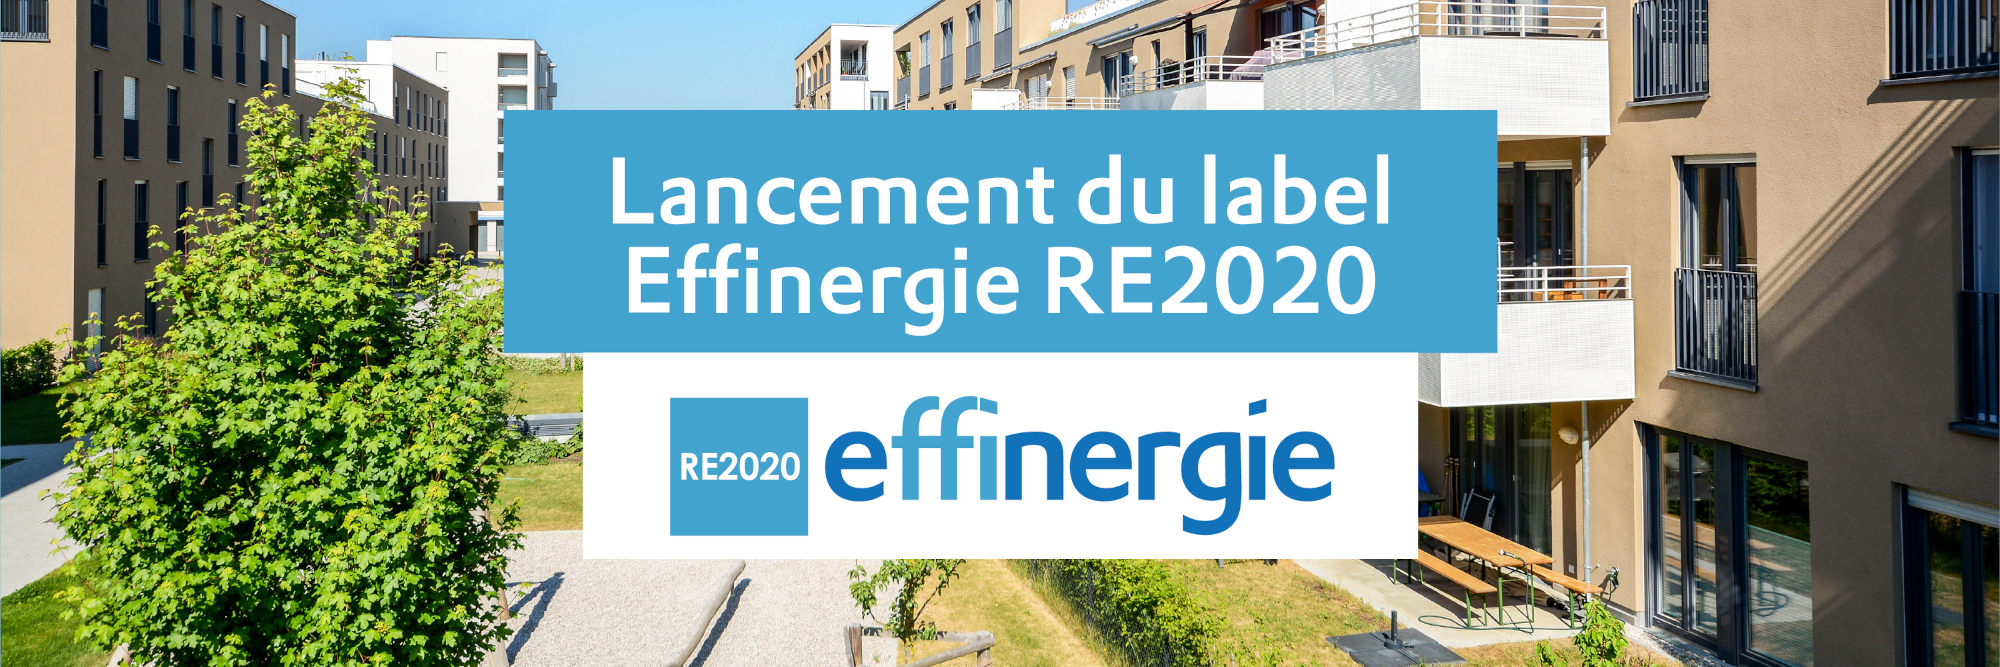 label Effinergie RE2020